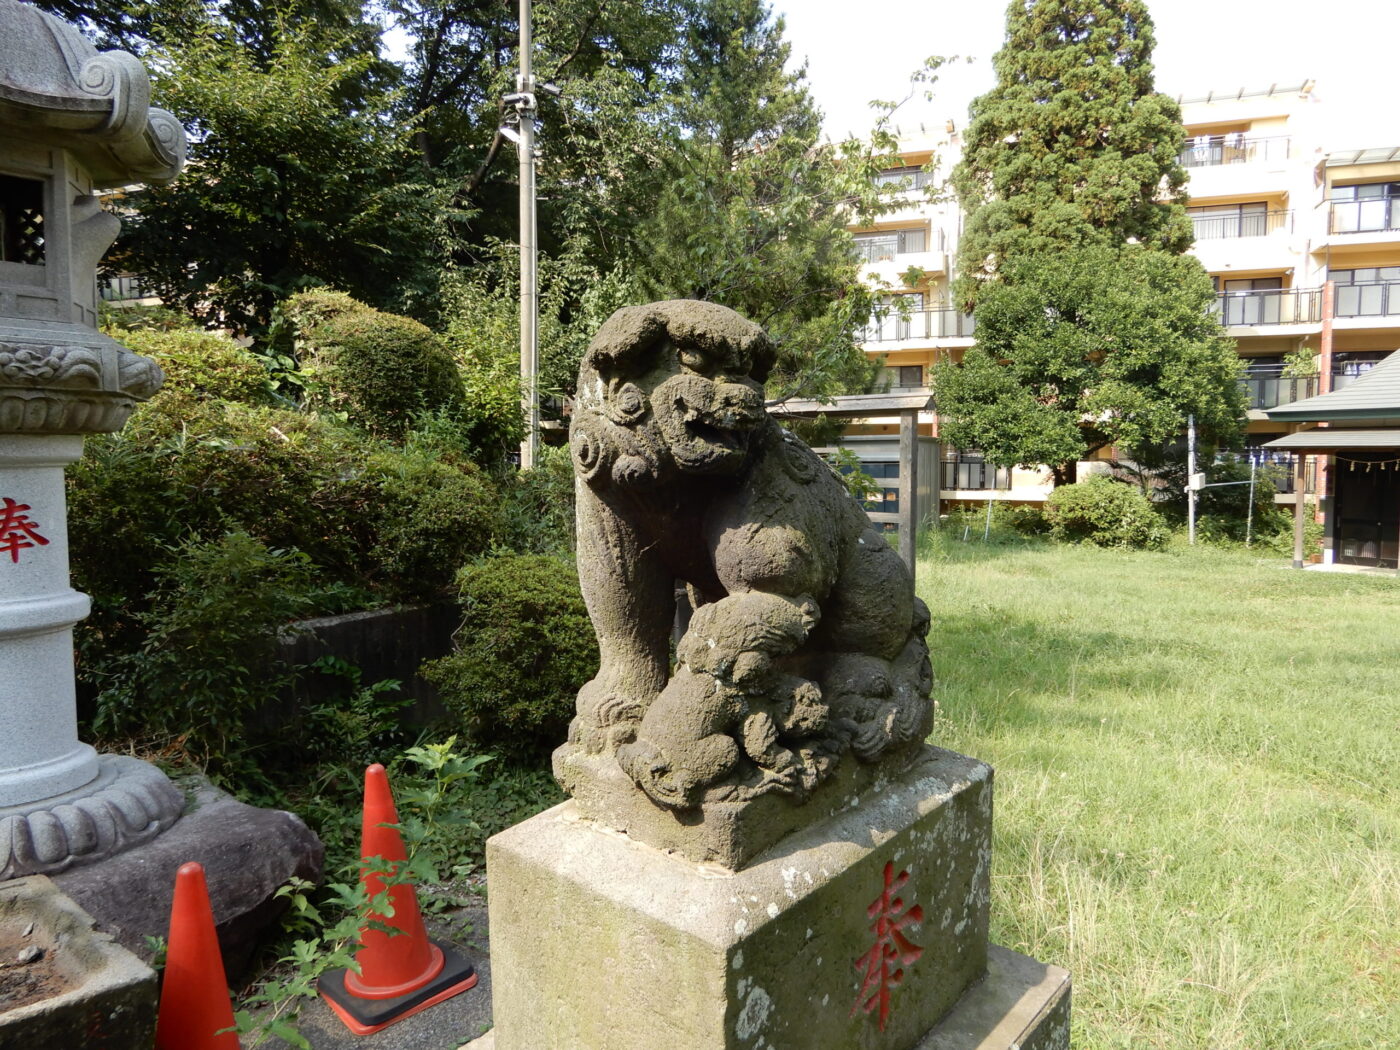 大石神社の写真